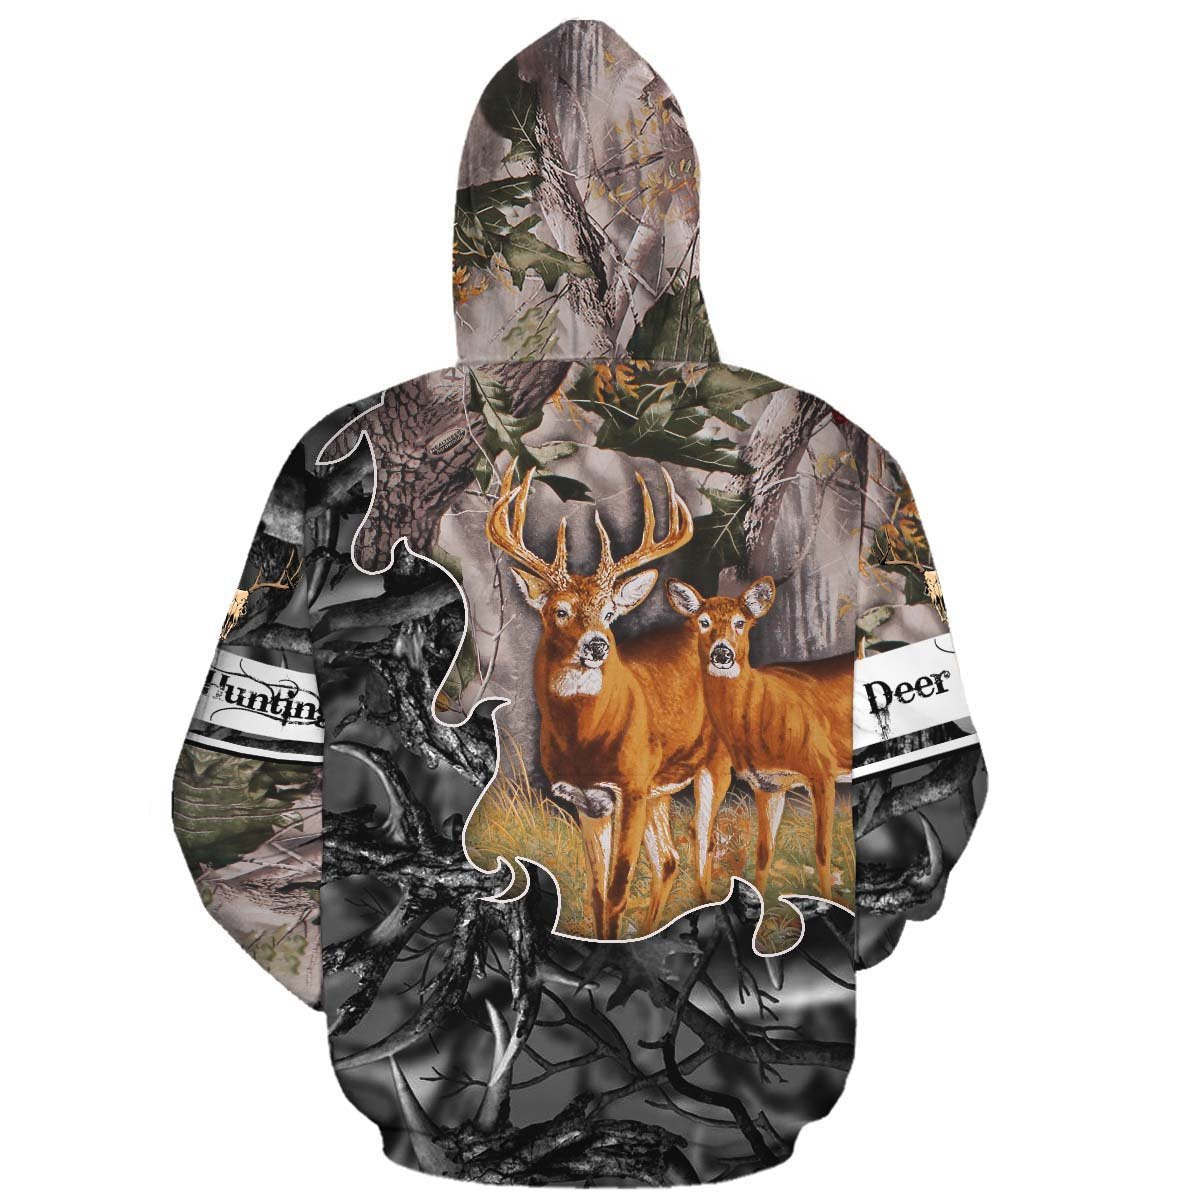 Hunting Deer 3D Hoodie 06695